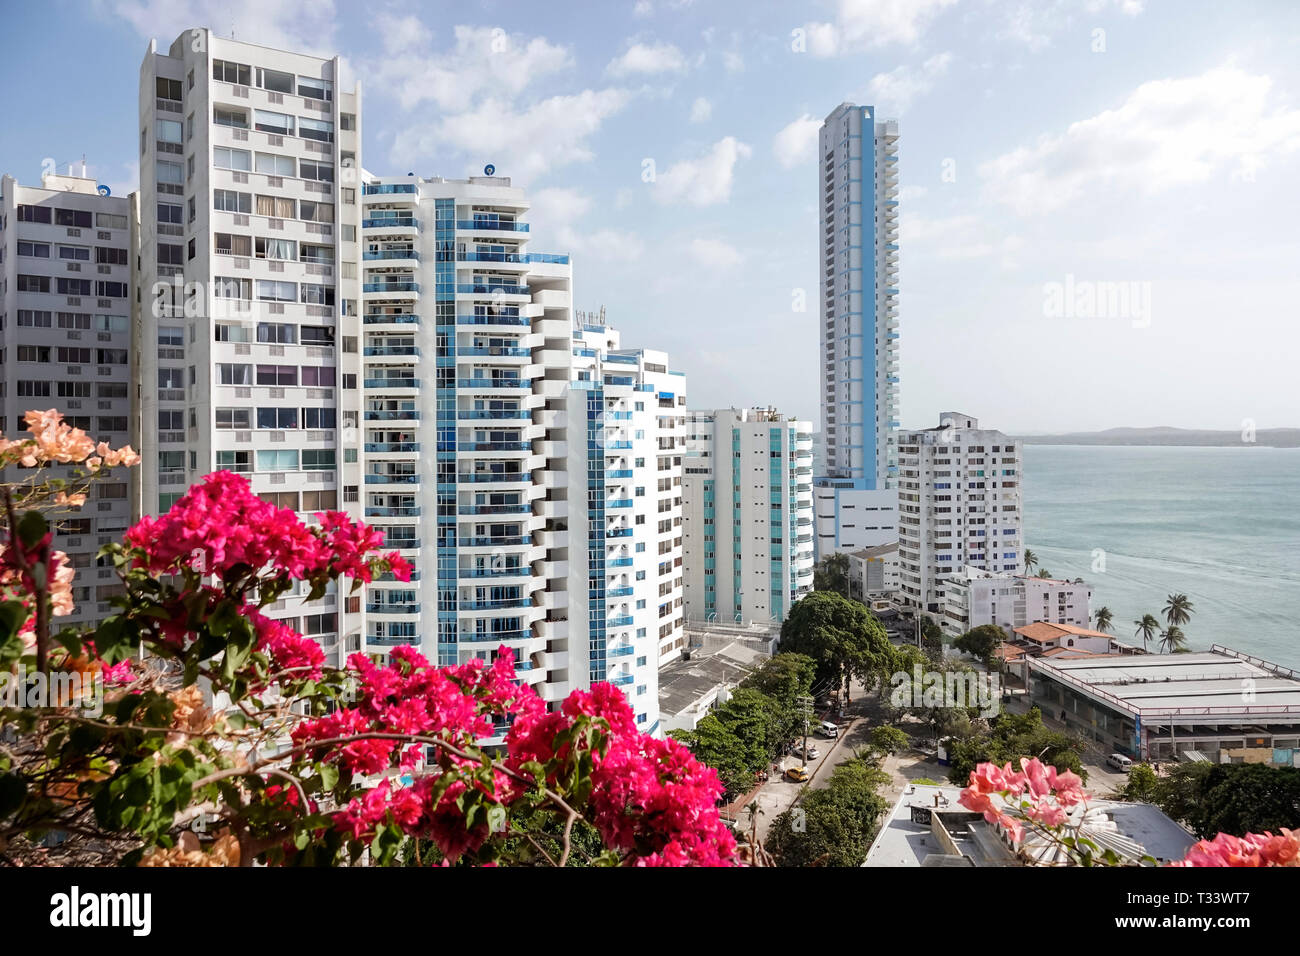 Cartagena Colombie,El Lagito,hauteur gratte-ciel gratte-ciel bâtiment immeubles appartement, condominium résidentiel appartement appartements bâtiment Banque D'Images